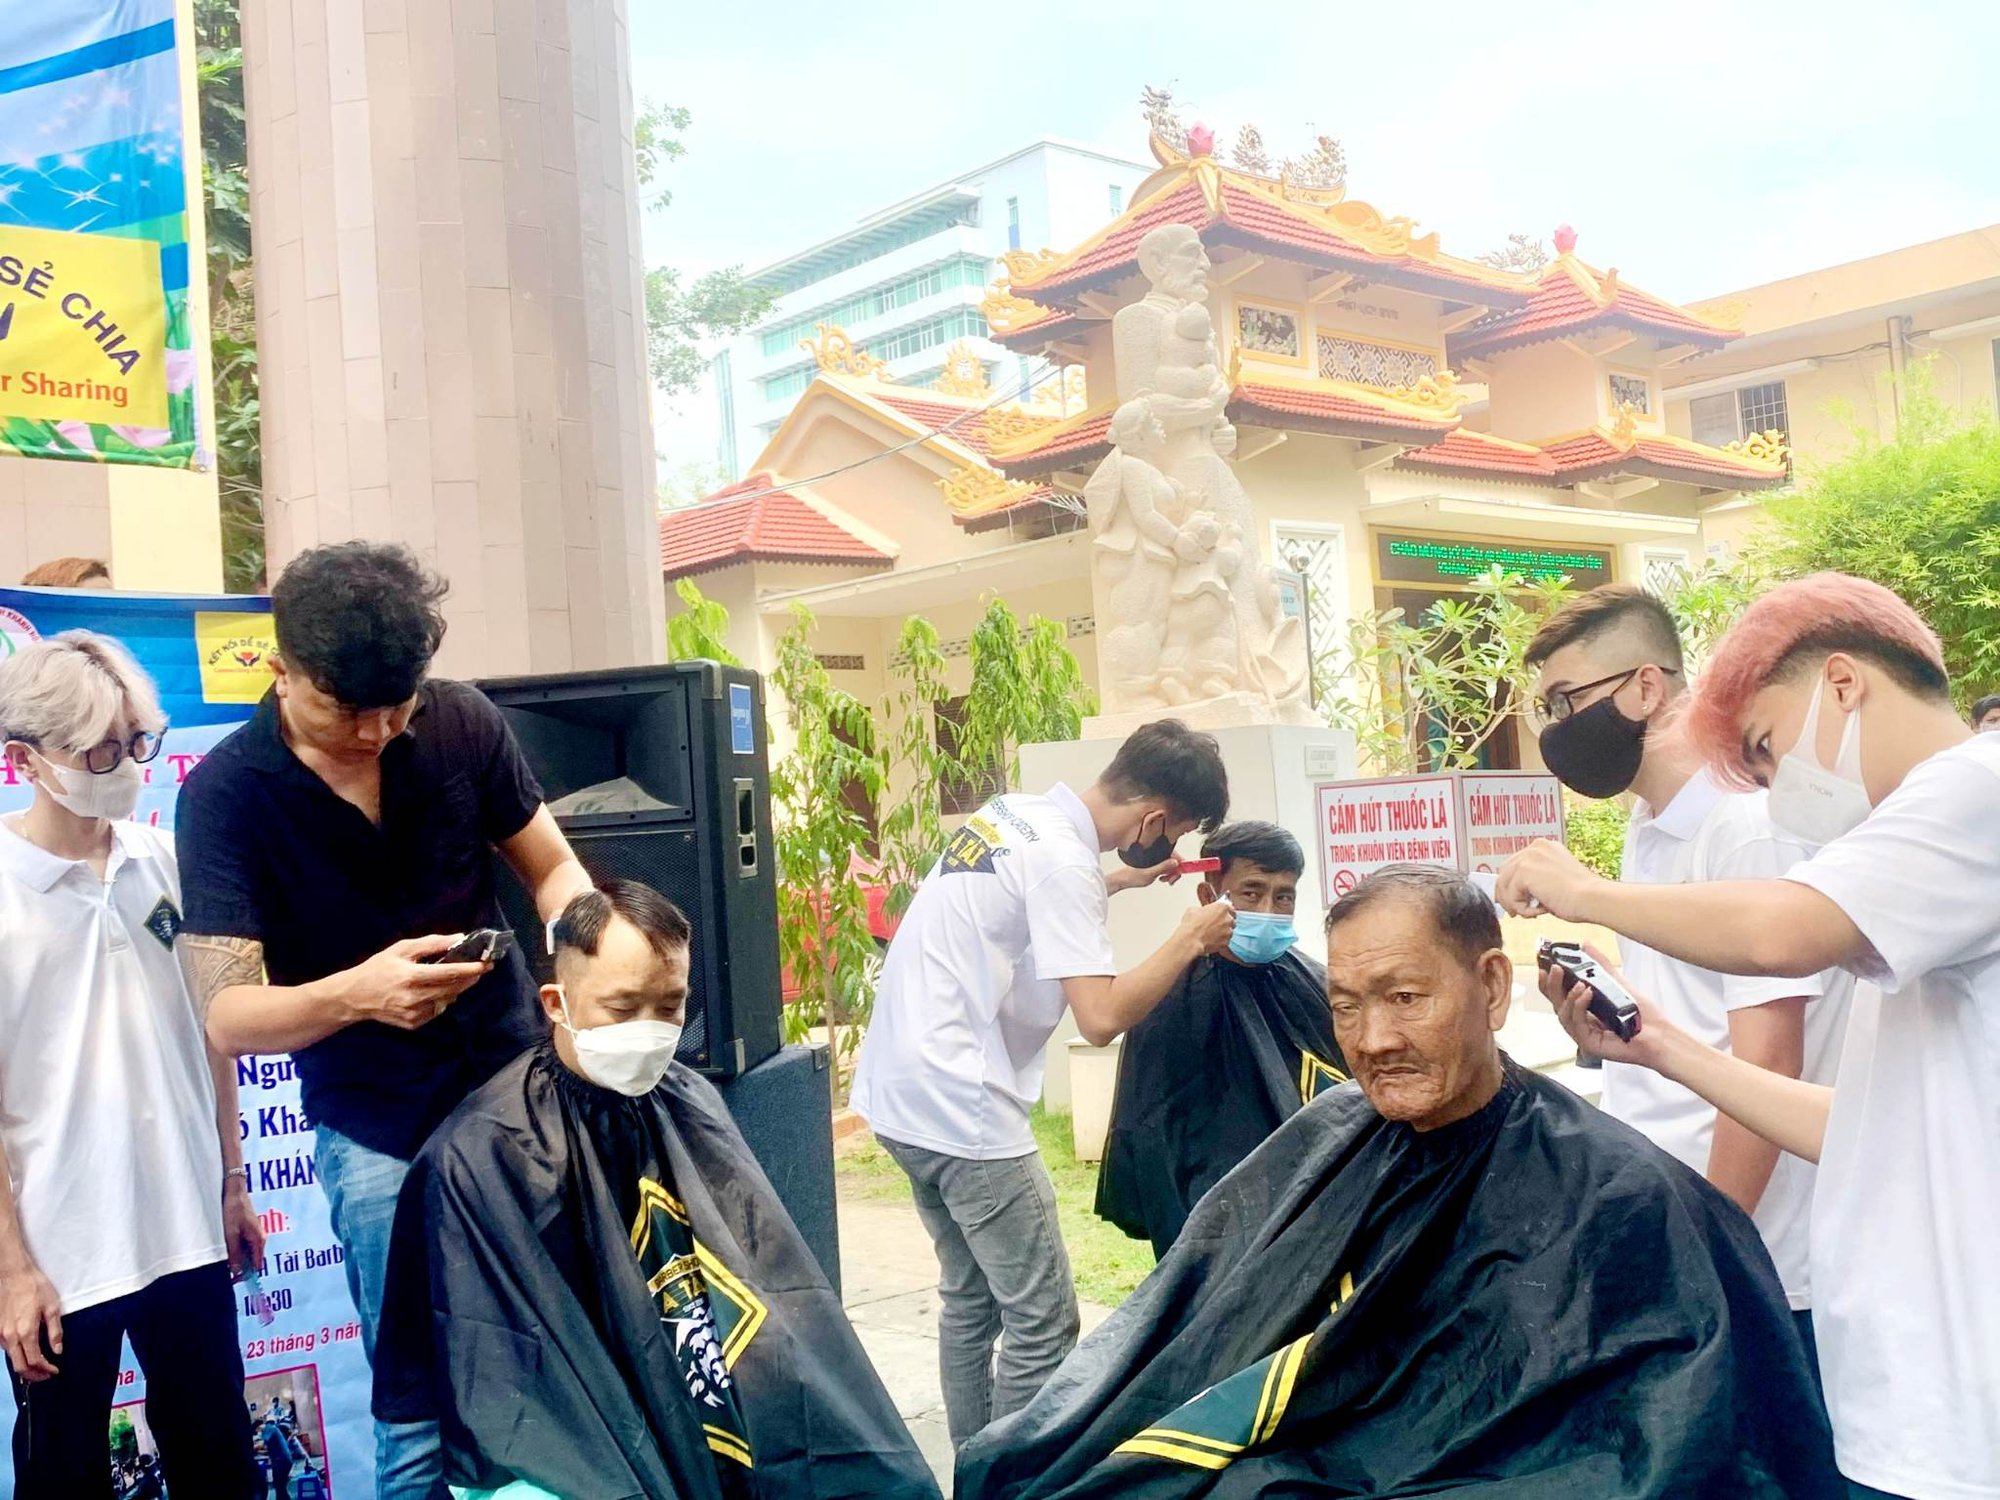 Tiệm cắt tóc gội đầu bình dân tưởng đâu đã chết không ngờ lại có cú lội  thành trend từ GenZ tới dân văn phòng đều tìm đến